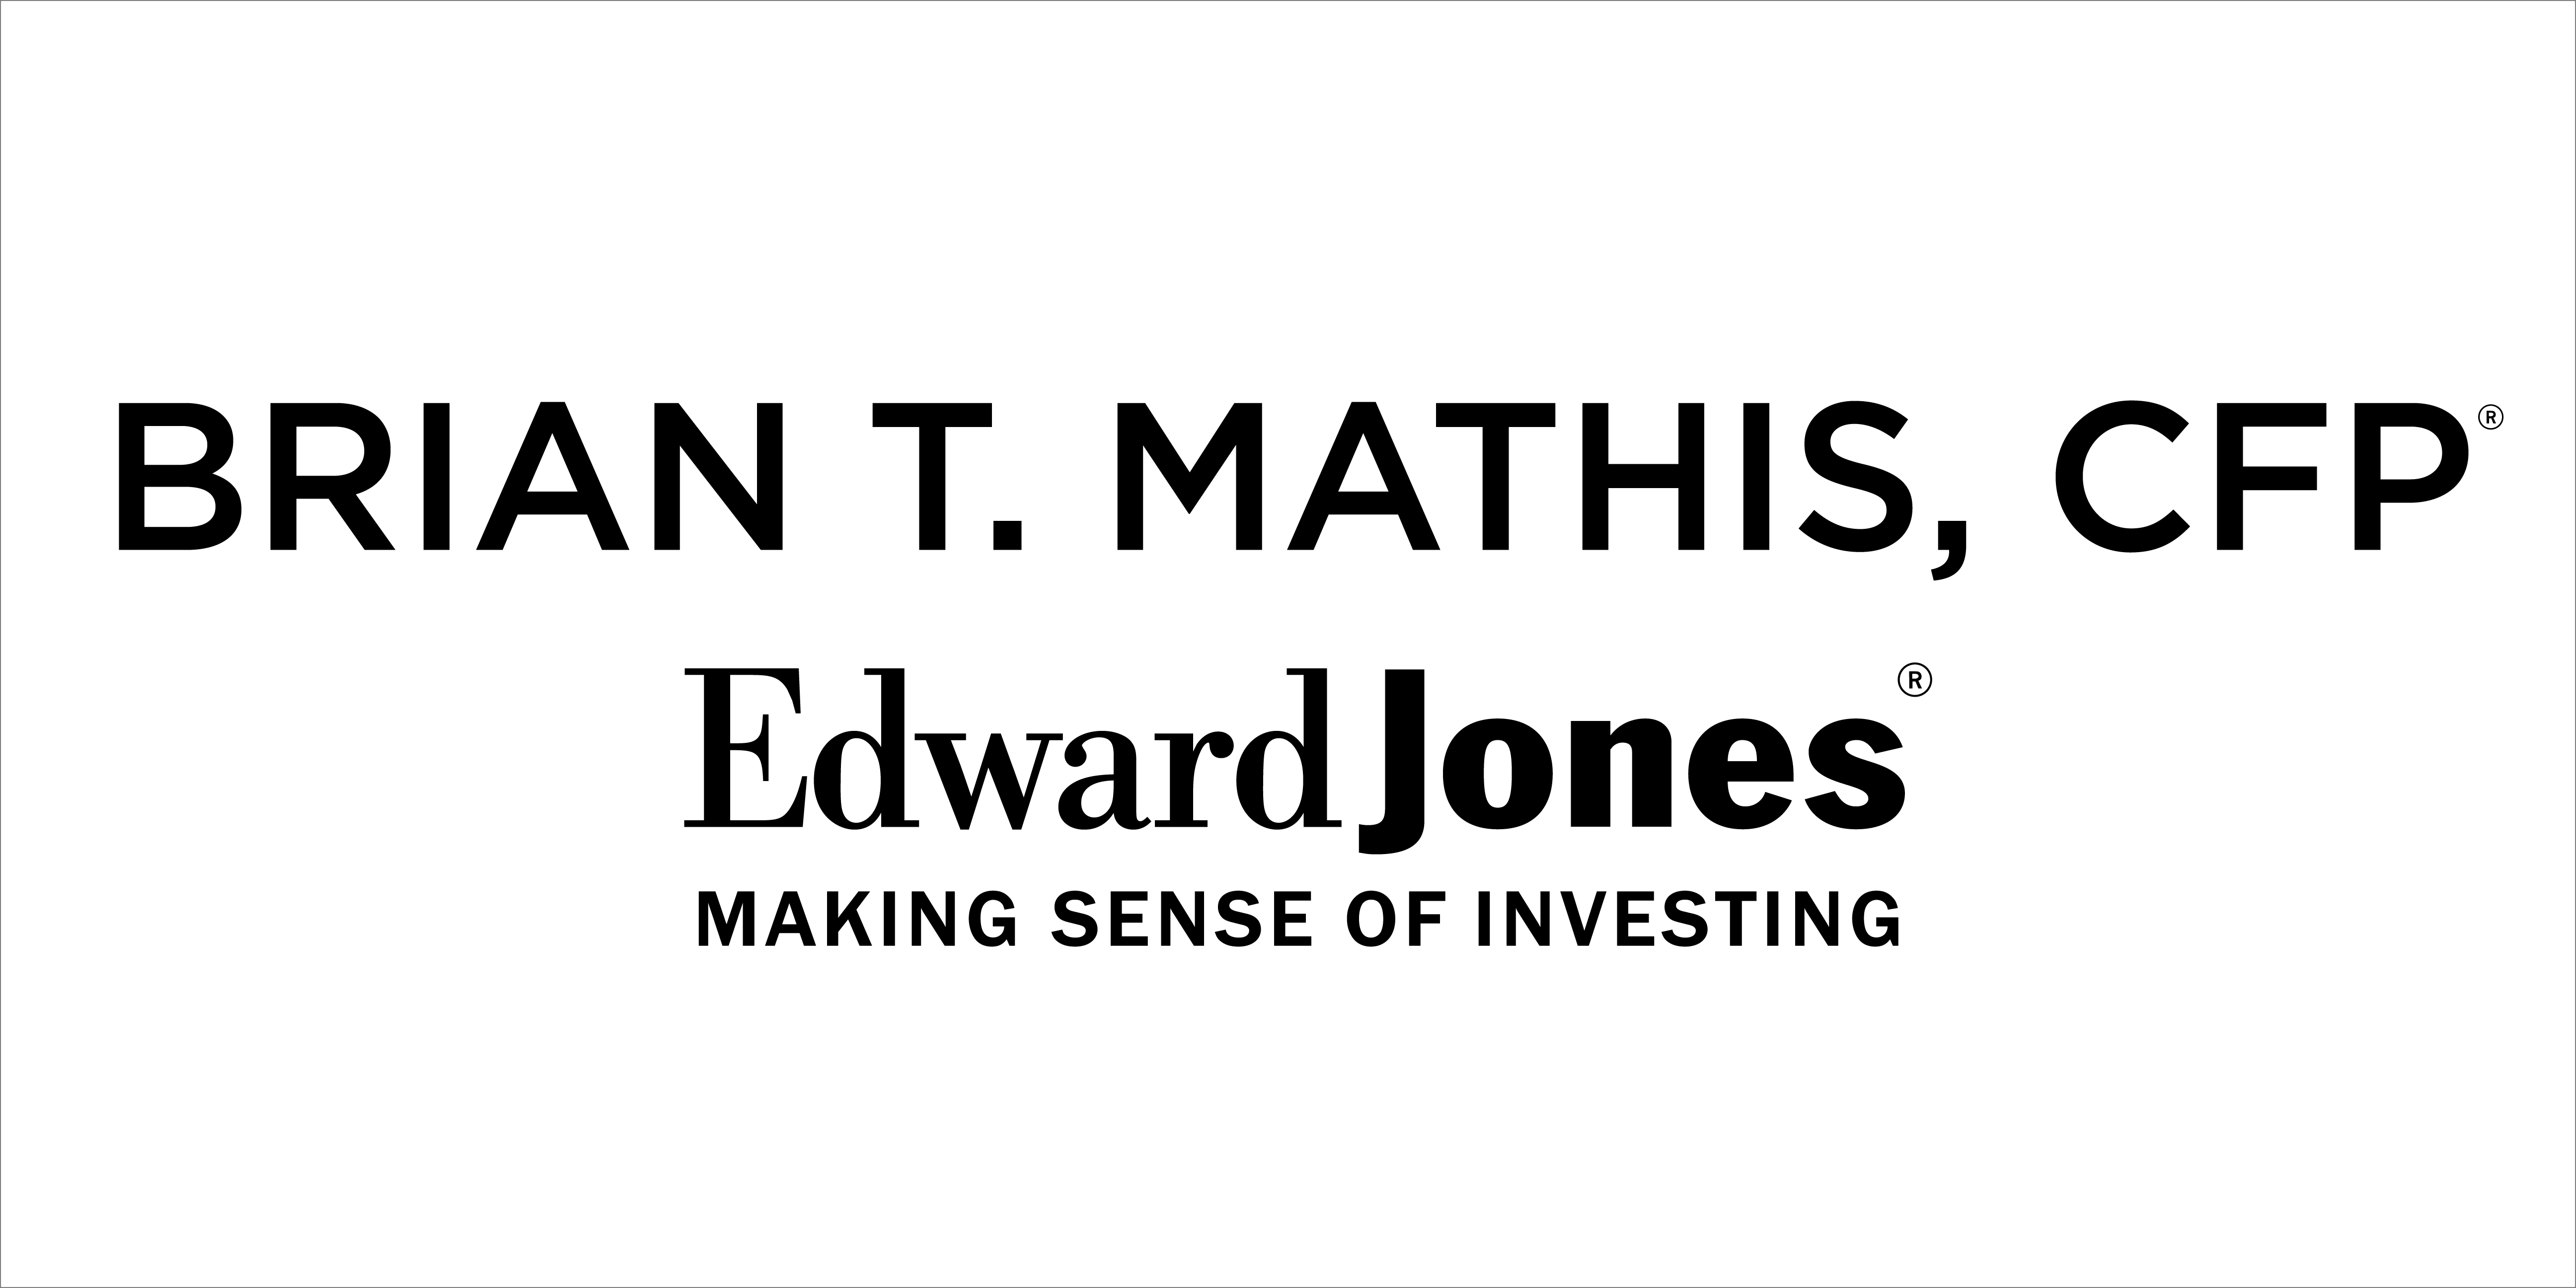 Sponsor Brian T. Mathis